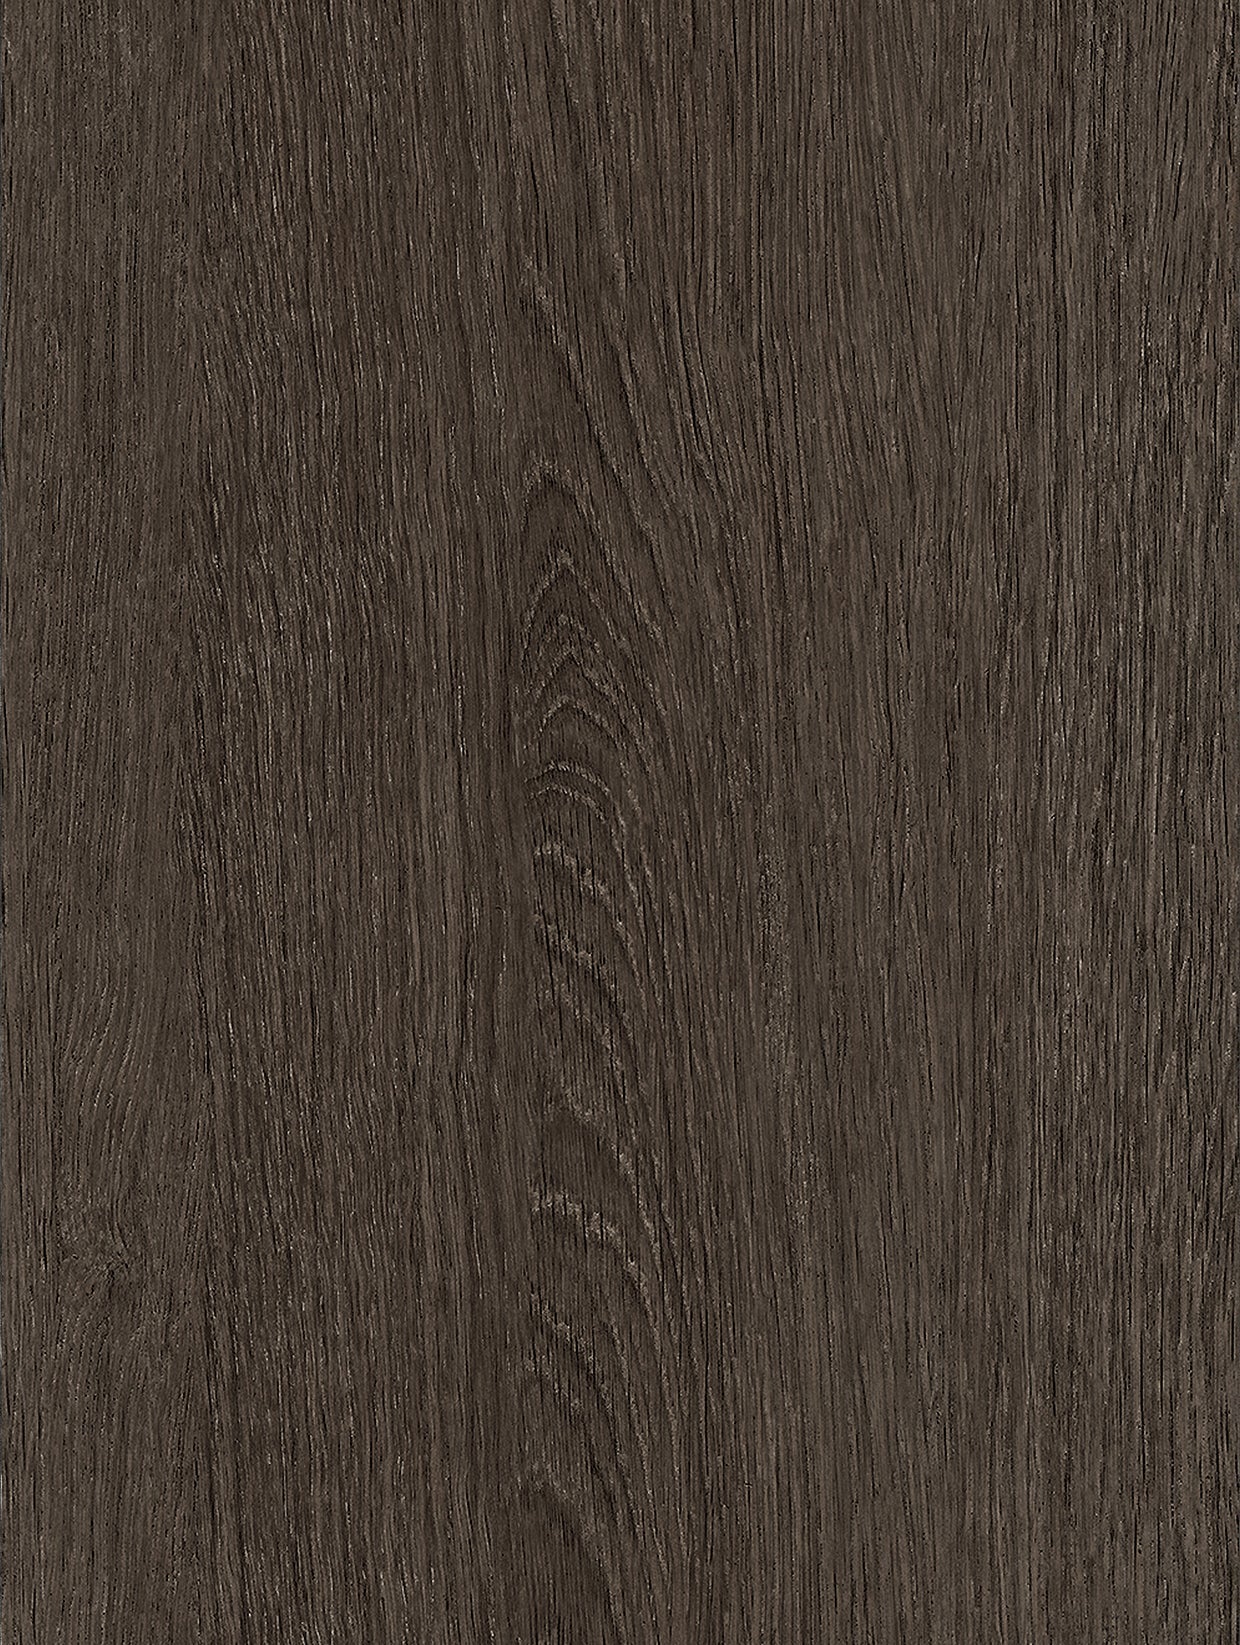 Wood - Dark | Holzdekor Dunkel Rost/Soft/Strukturiert Musterfolie A3